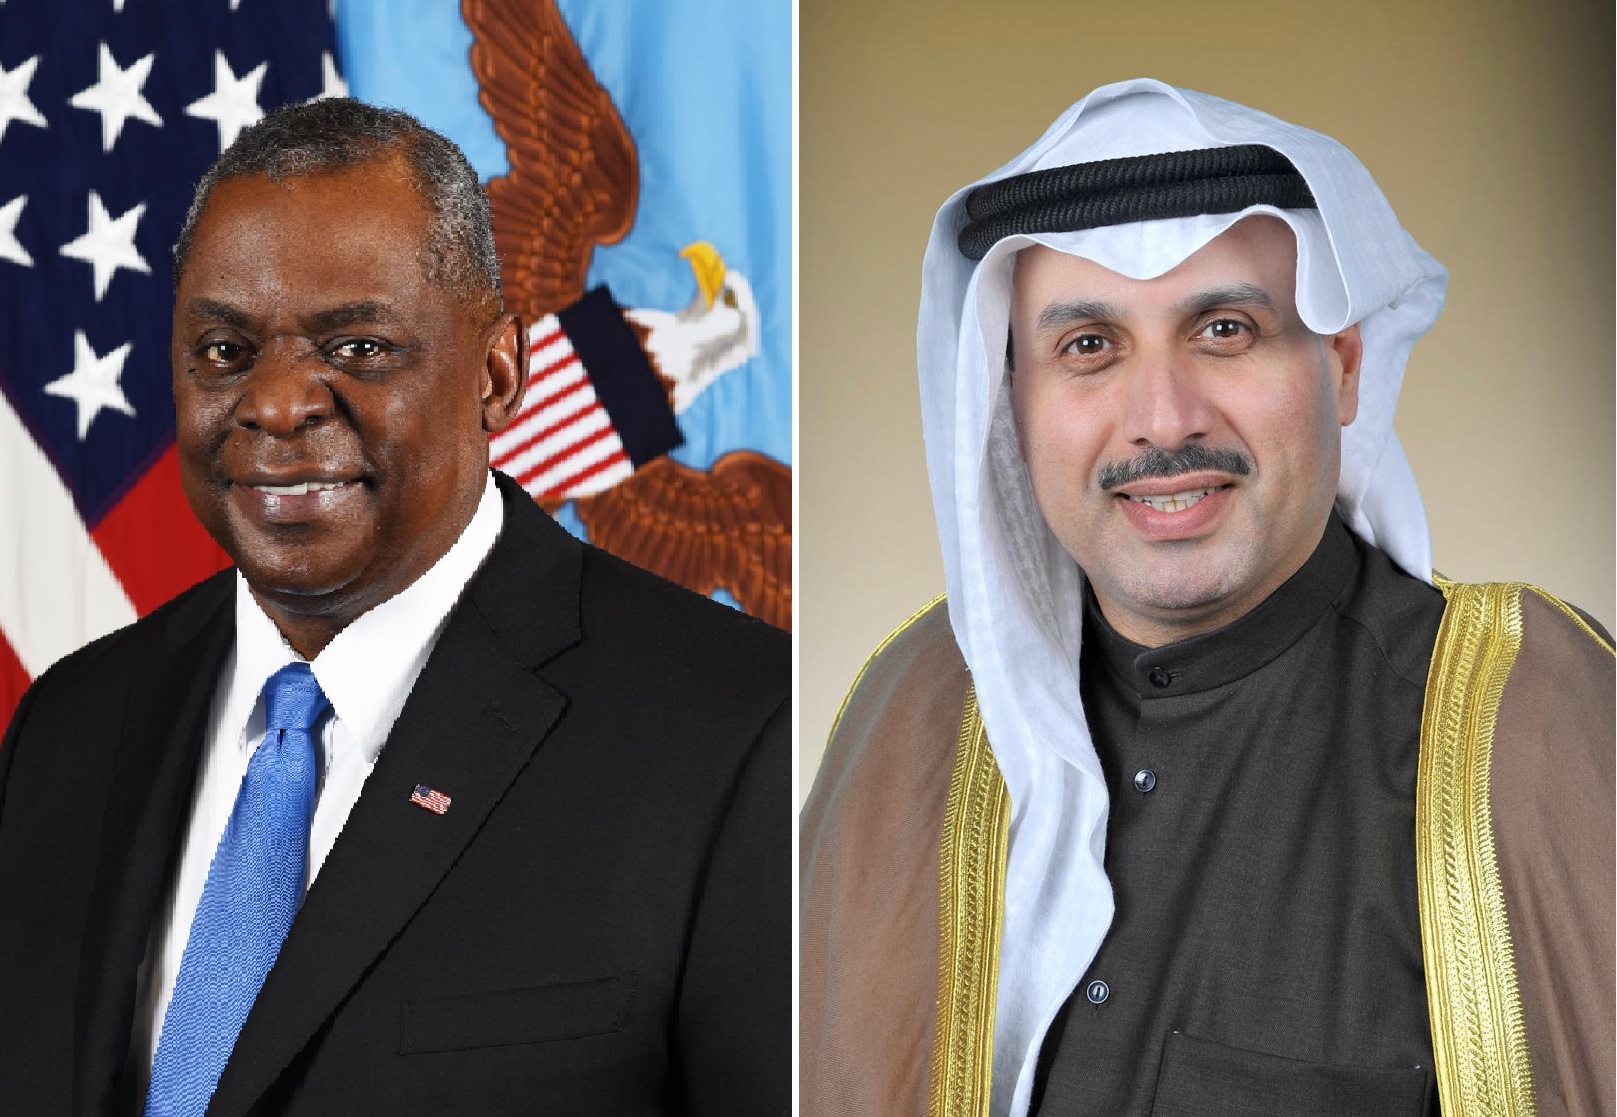 وزير الدفاع الكويتي يتلقى اتصالا من نظيره الأمريكي مهنئا إياه بأعياد الكويت الوطنية                                                                                                                                                                       